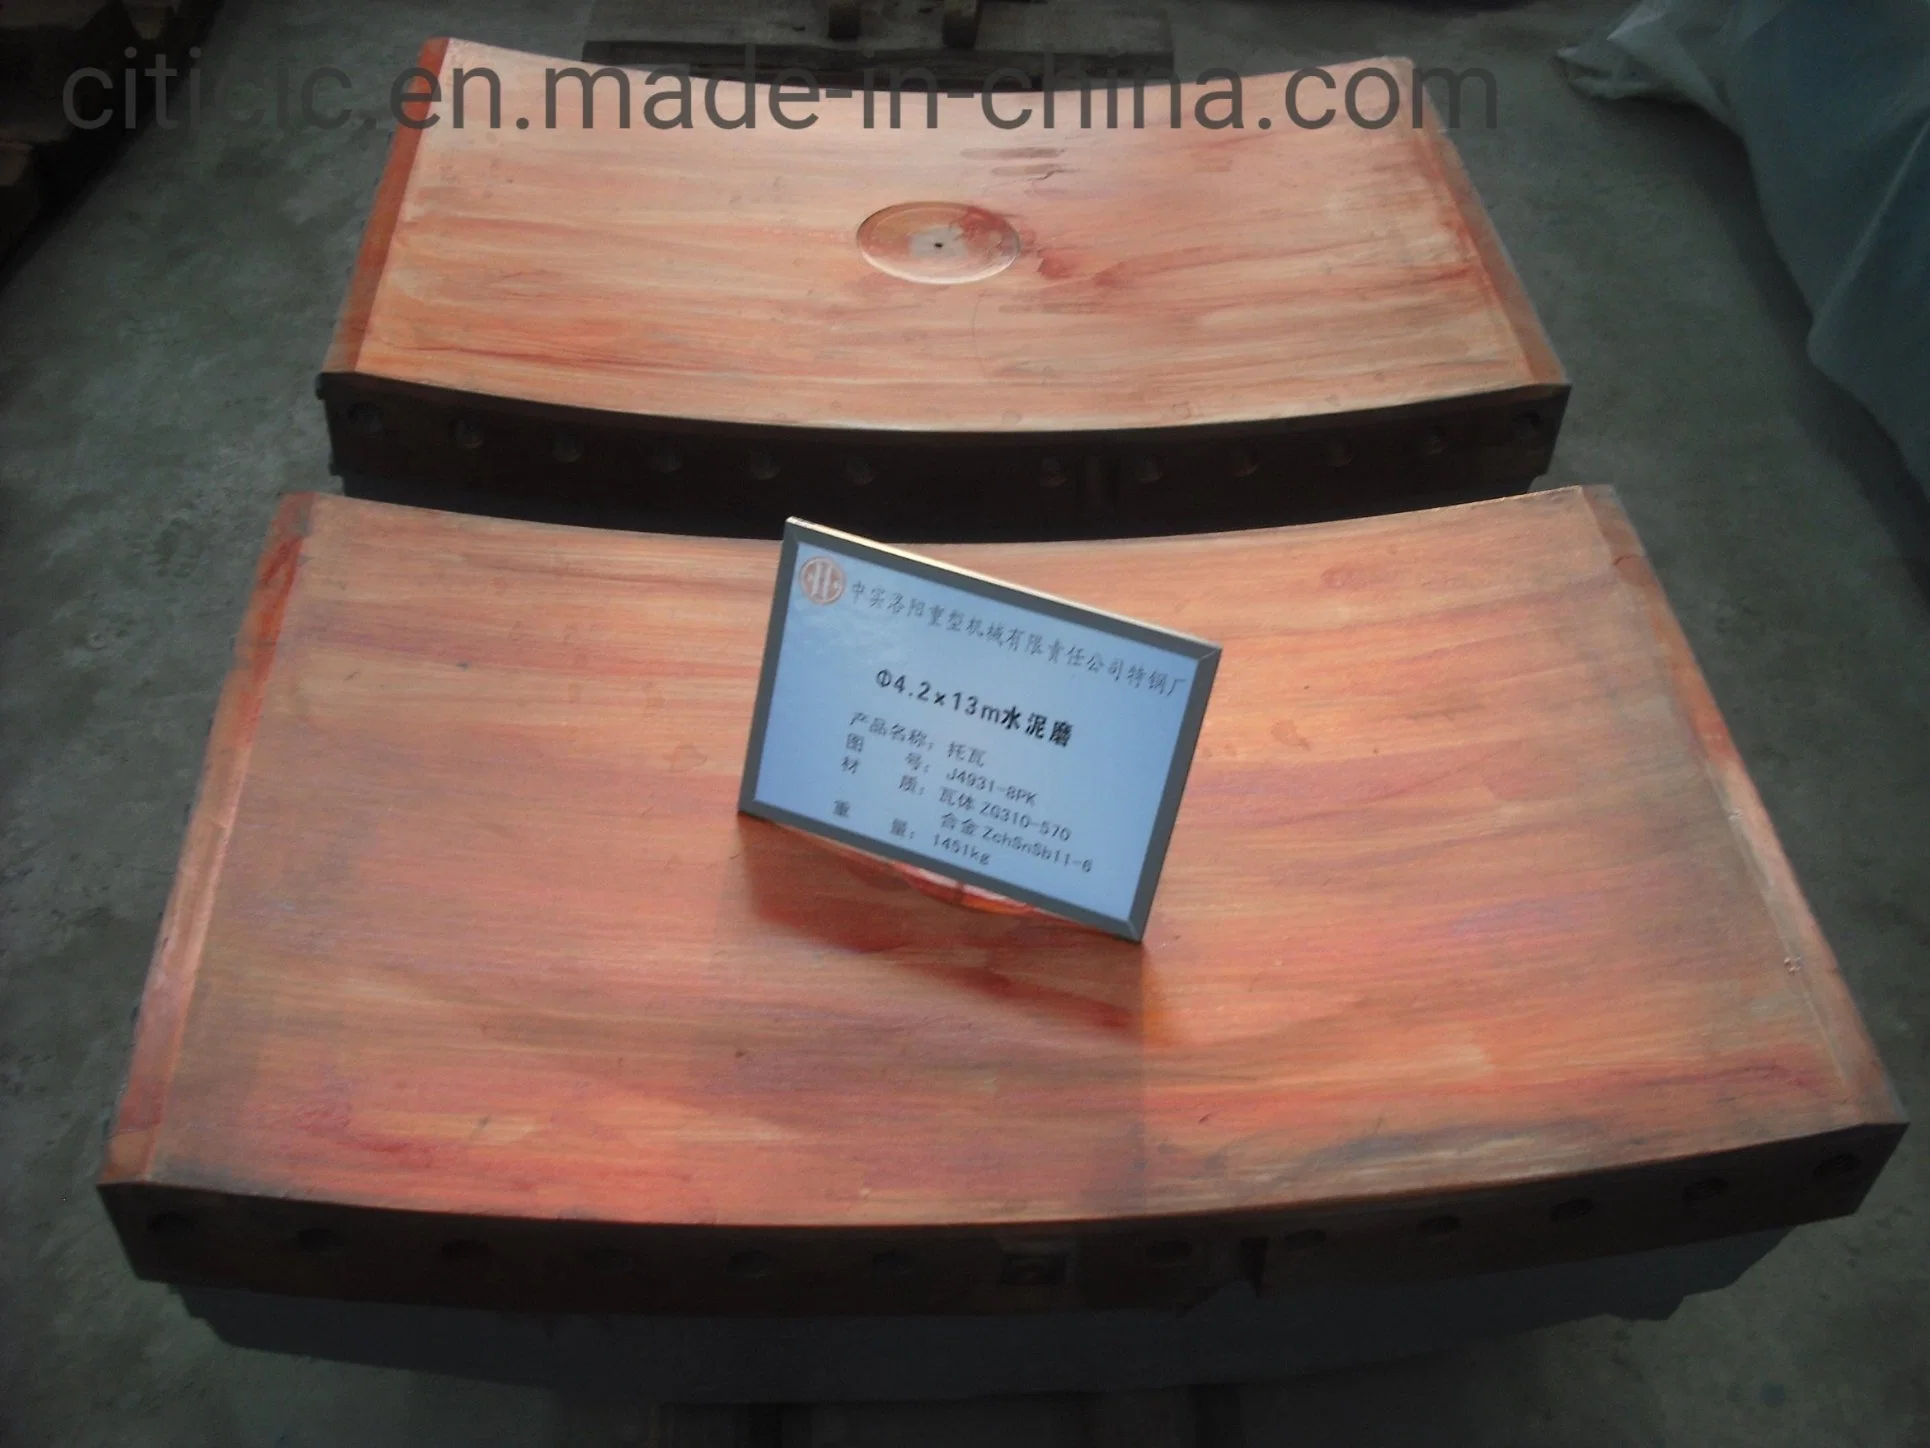 بطانات مصانع الفولاذ المقاومة للتآكل في الصين لمصانع عور، مطحنة المناجم